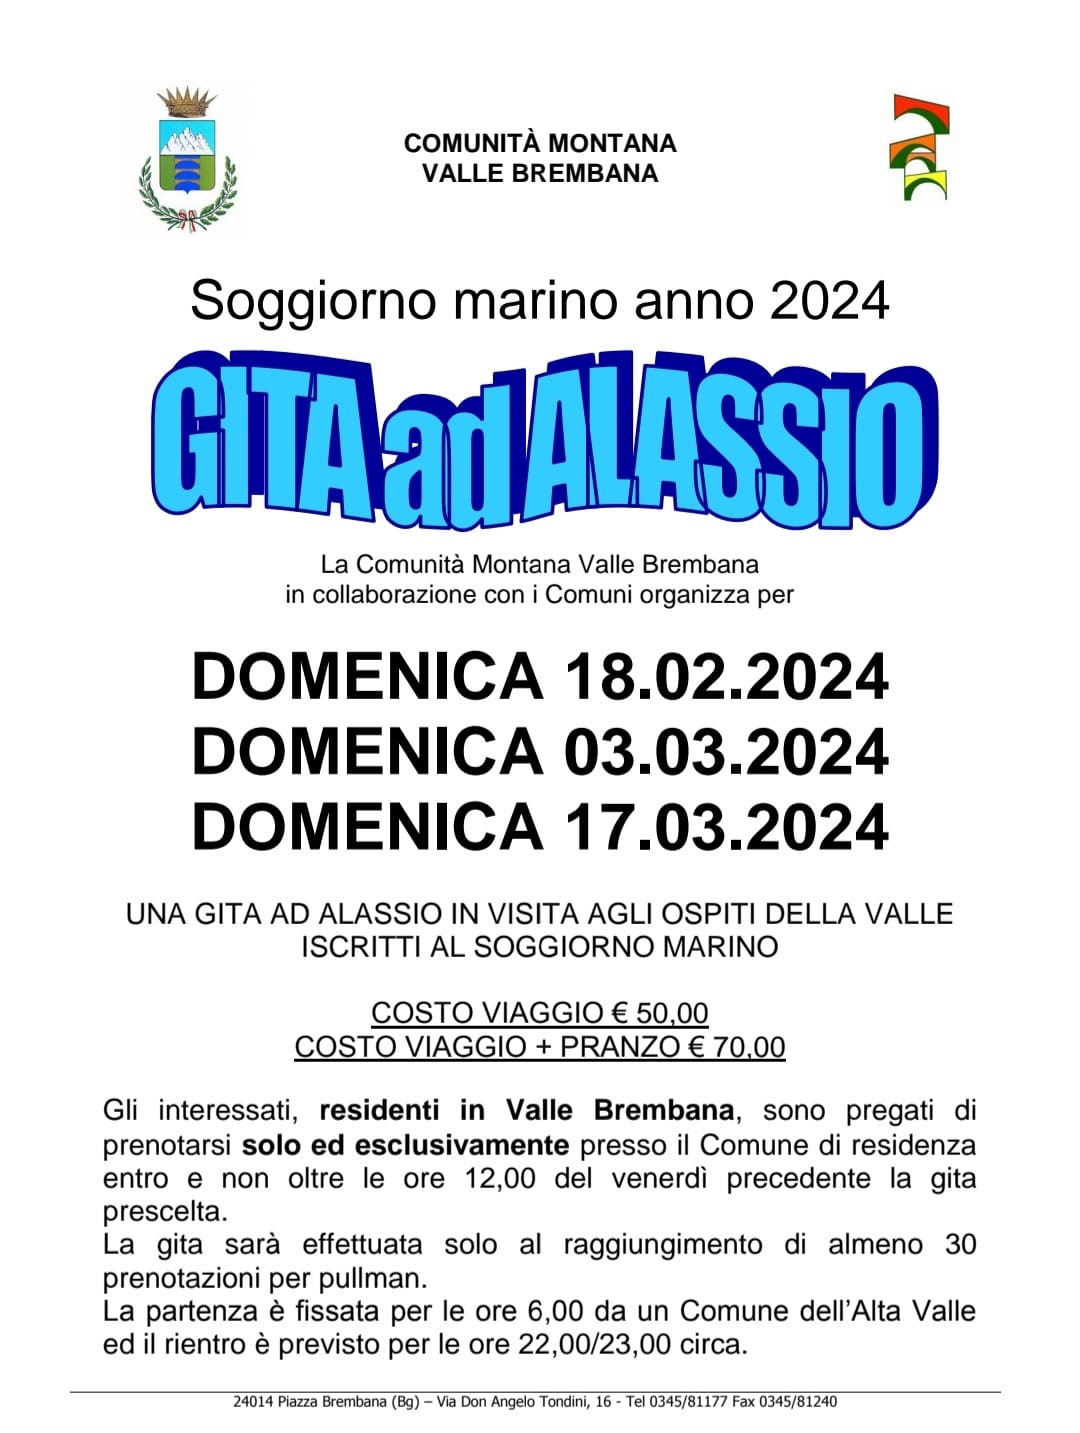 Immagine che raffigura Gite ad Alassio Febbraio/Marzo 2024